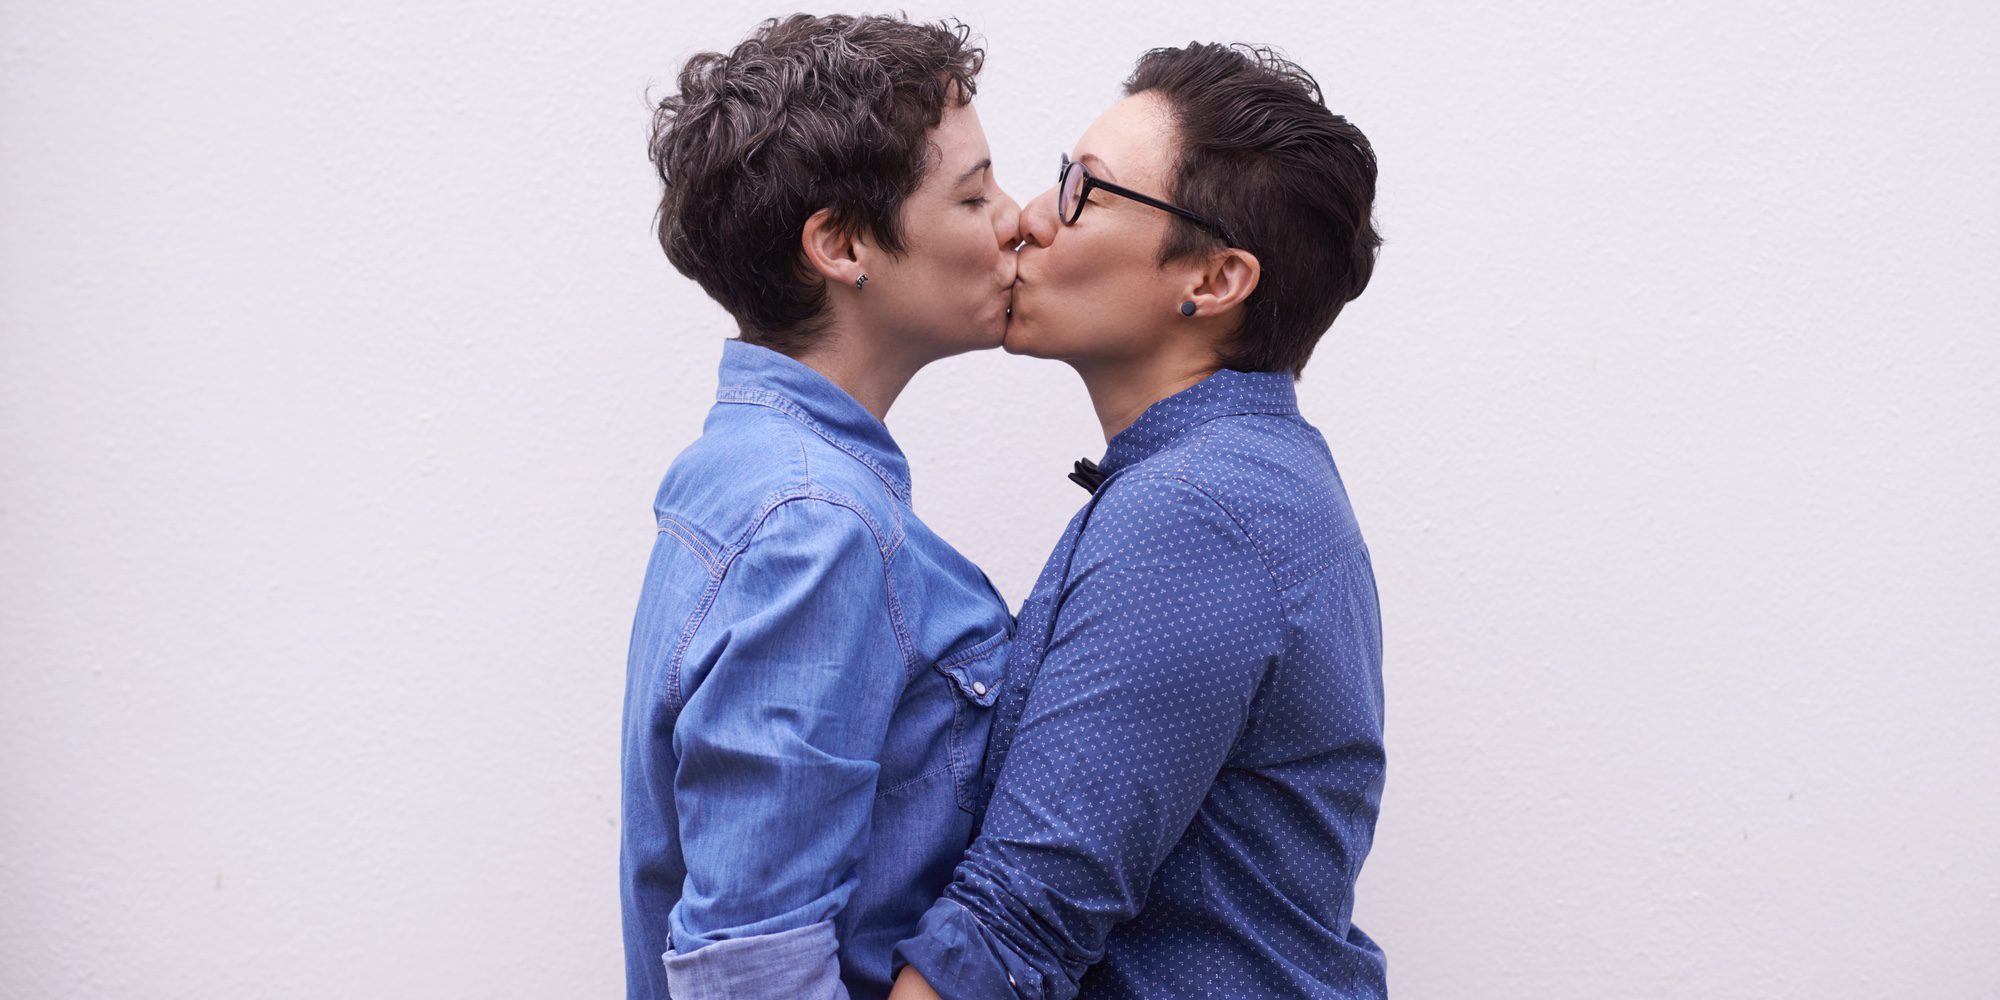 Mujer y heterosexual: Menos posibilidades de tener un orgasmo que una lesbiana